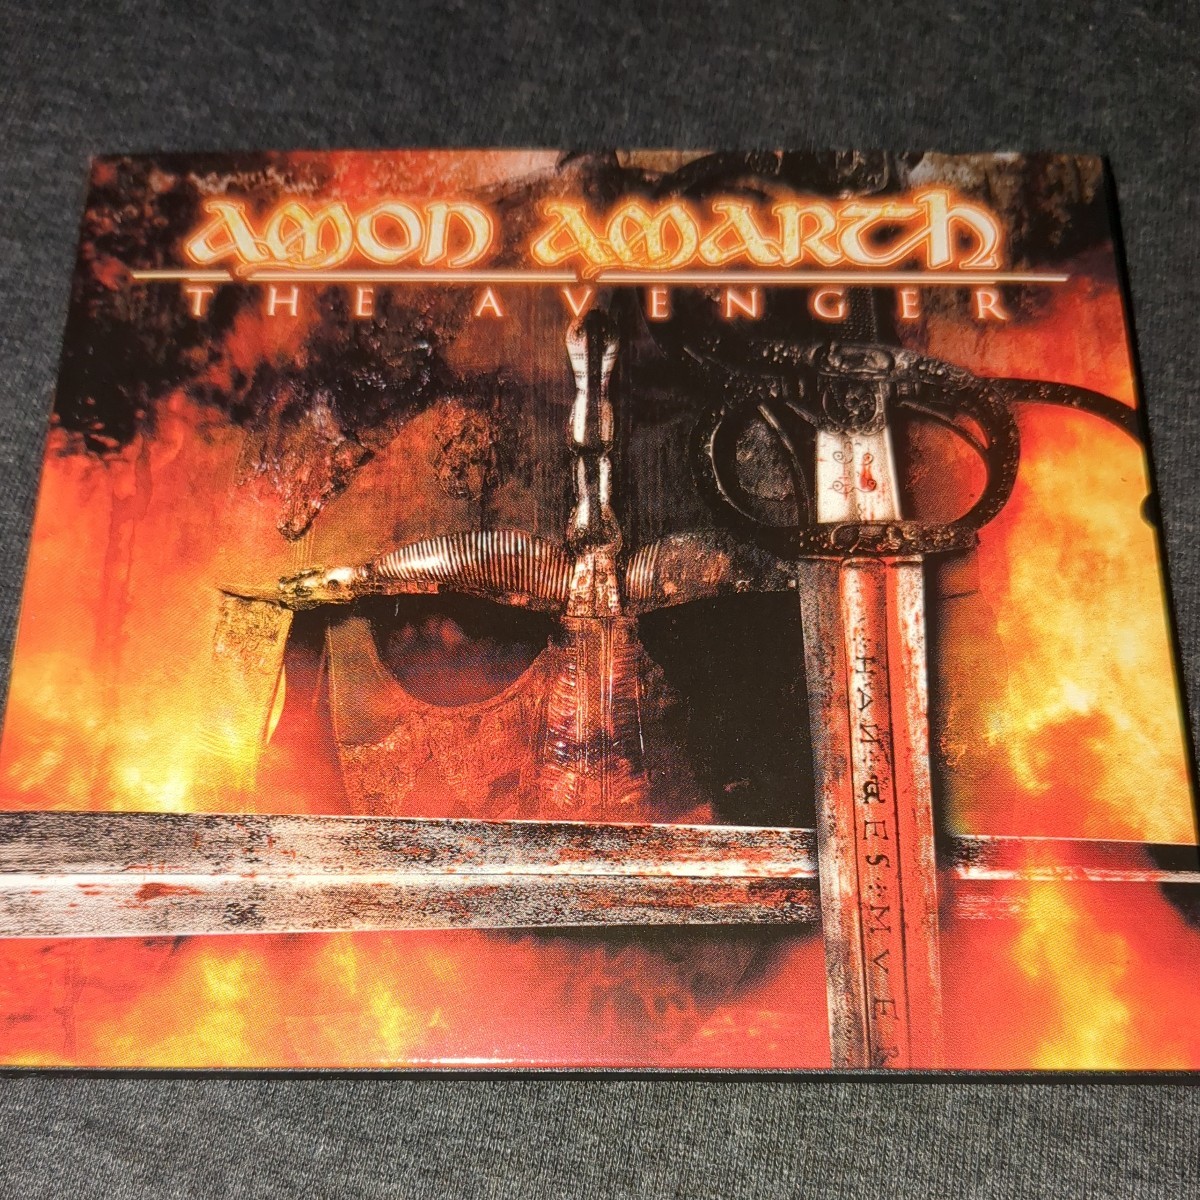 AMON AMARTH(アモン アマース):THE AVENGER デジパック仕様 輸入盤の画像1